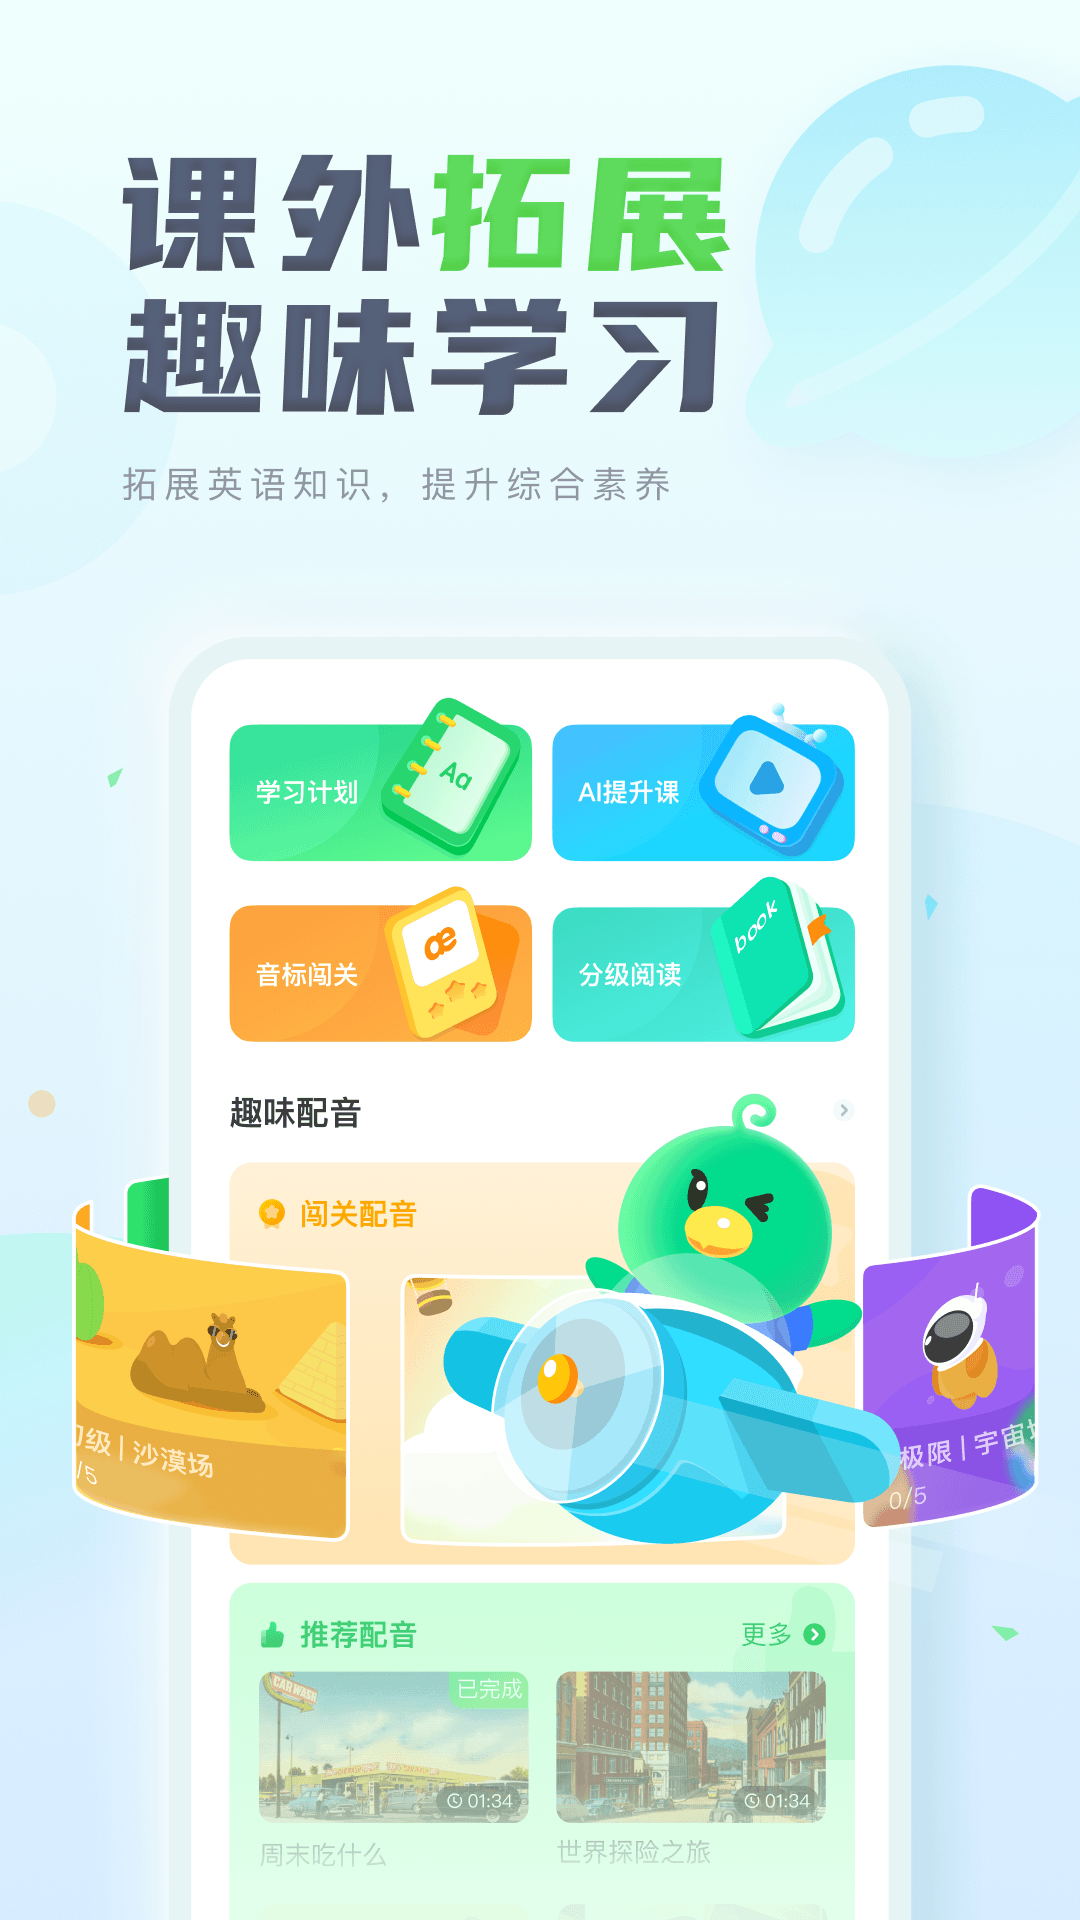 讯飞e听说中学手机端 v5.7.2 官方安卓最新版3